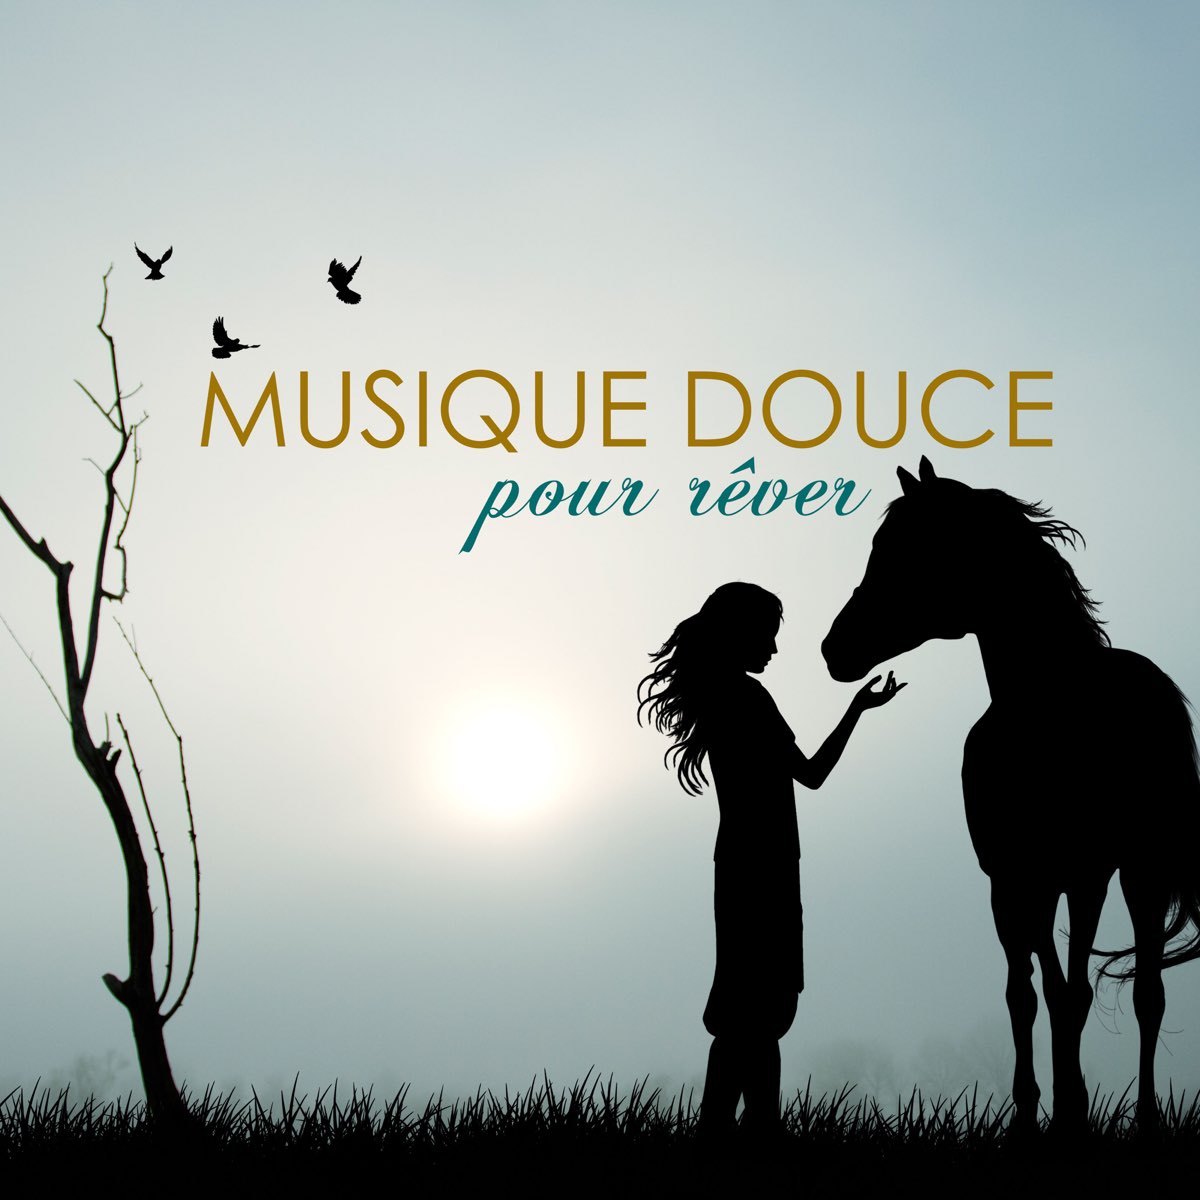 Musique Douce Ensemble: albums, songs, playlists